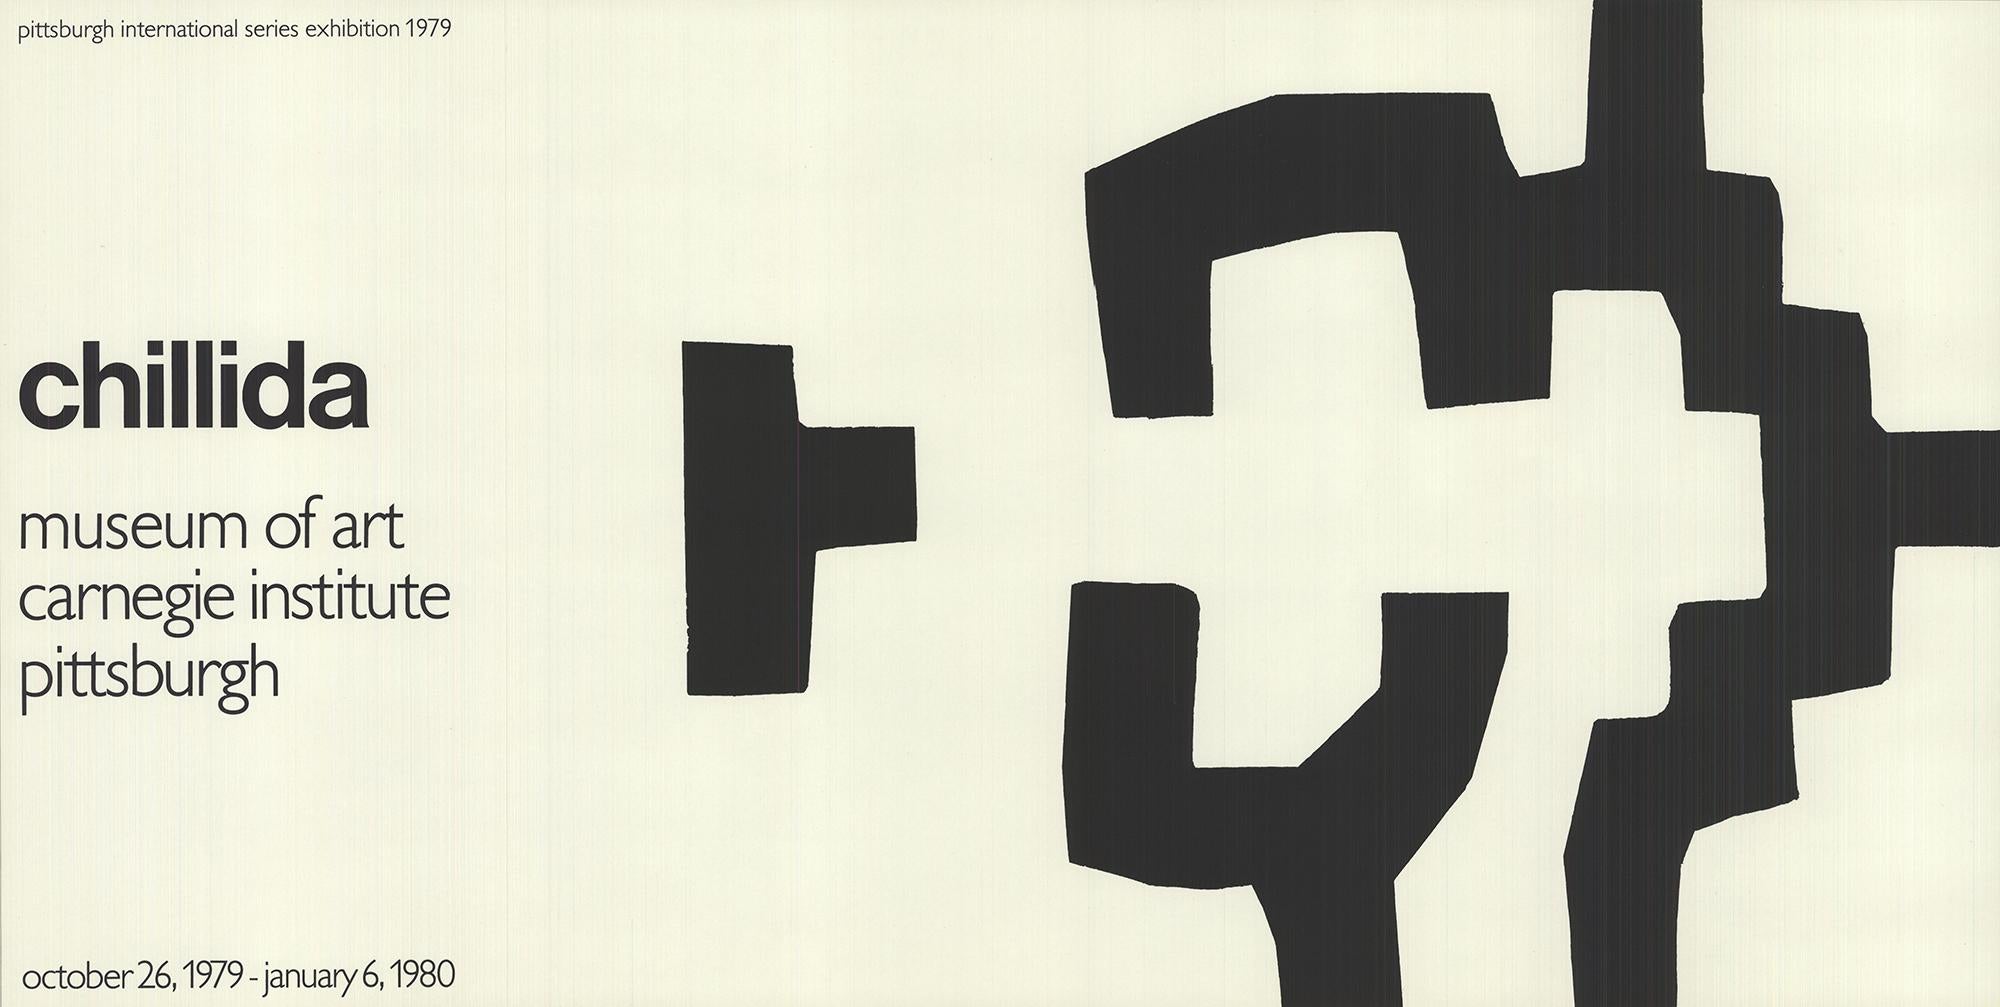 Plakat für eine Chillida-Ausstellung im Museum of Art Carnegie Institute in Pittsburgh, 1980.